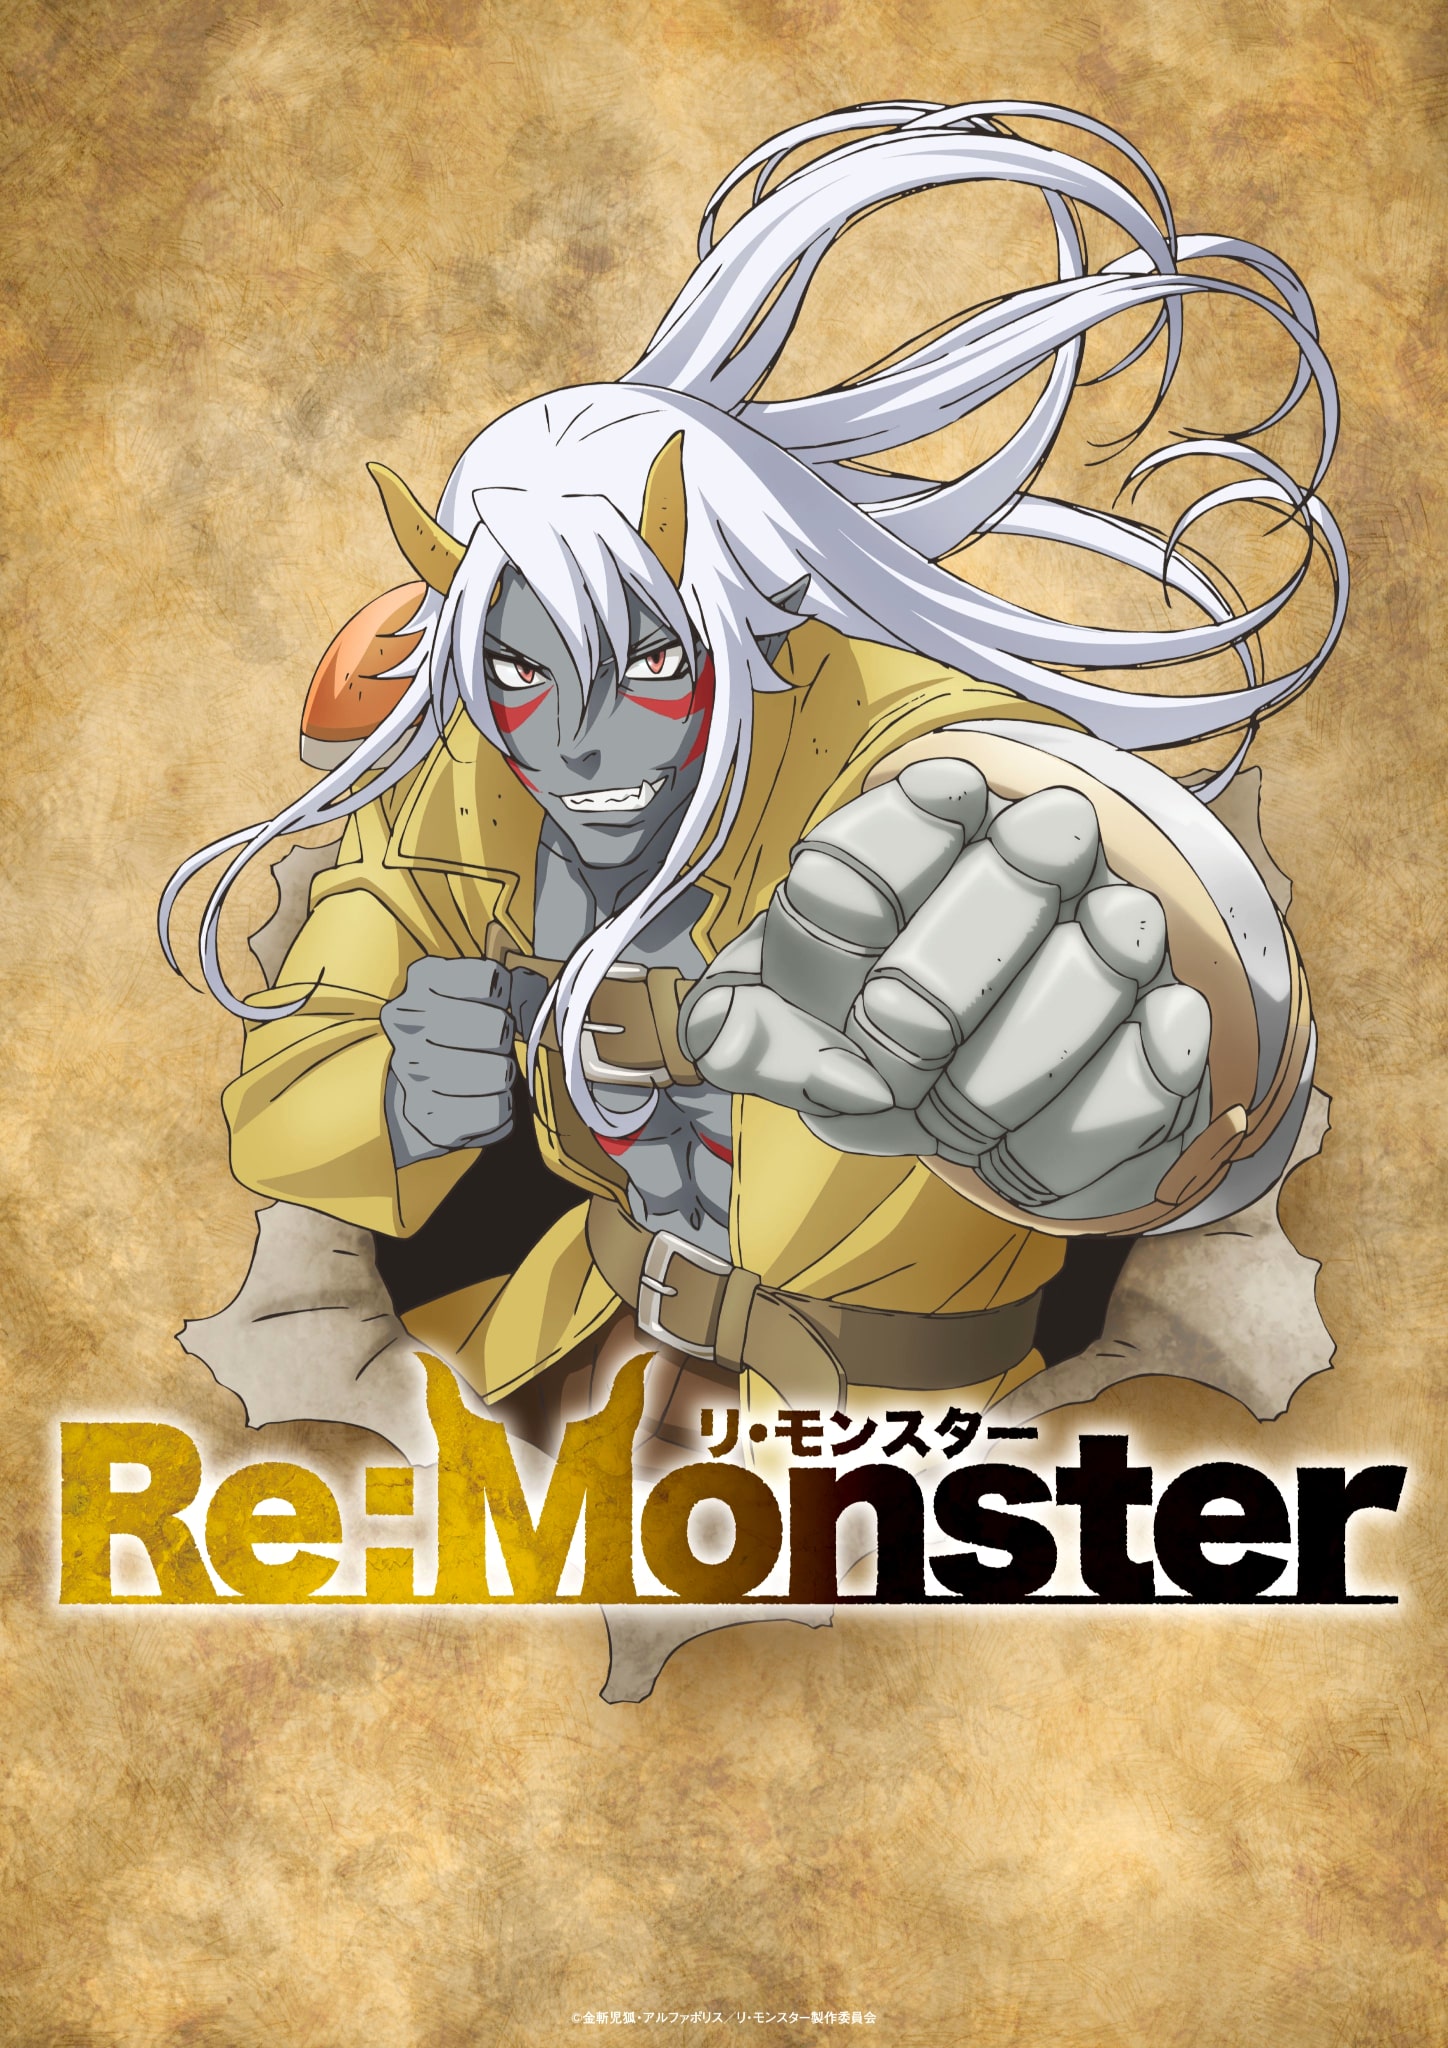 Premier visuel pour lanime Re:Monster